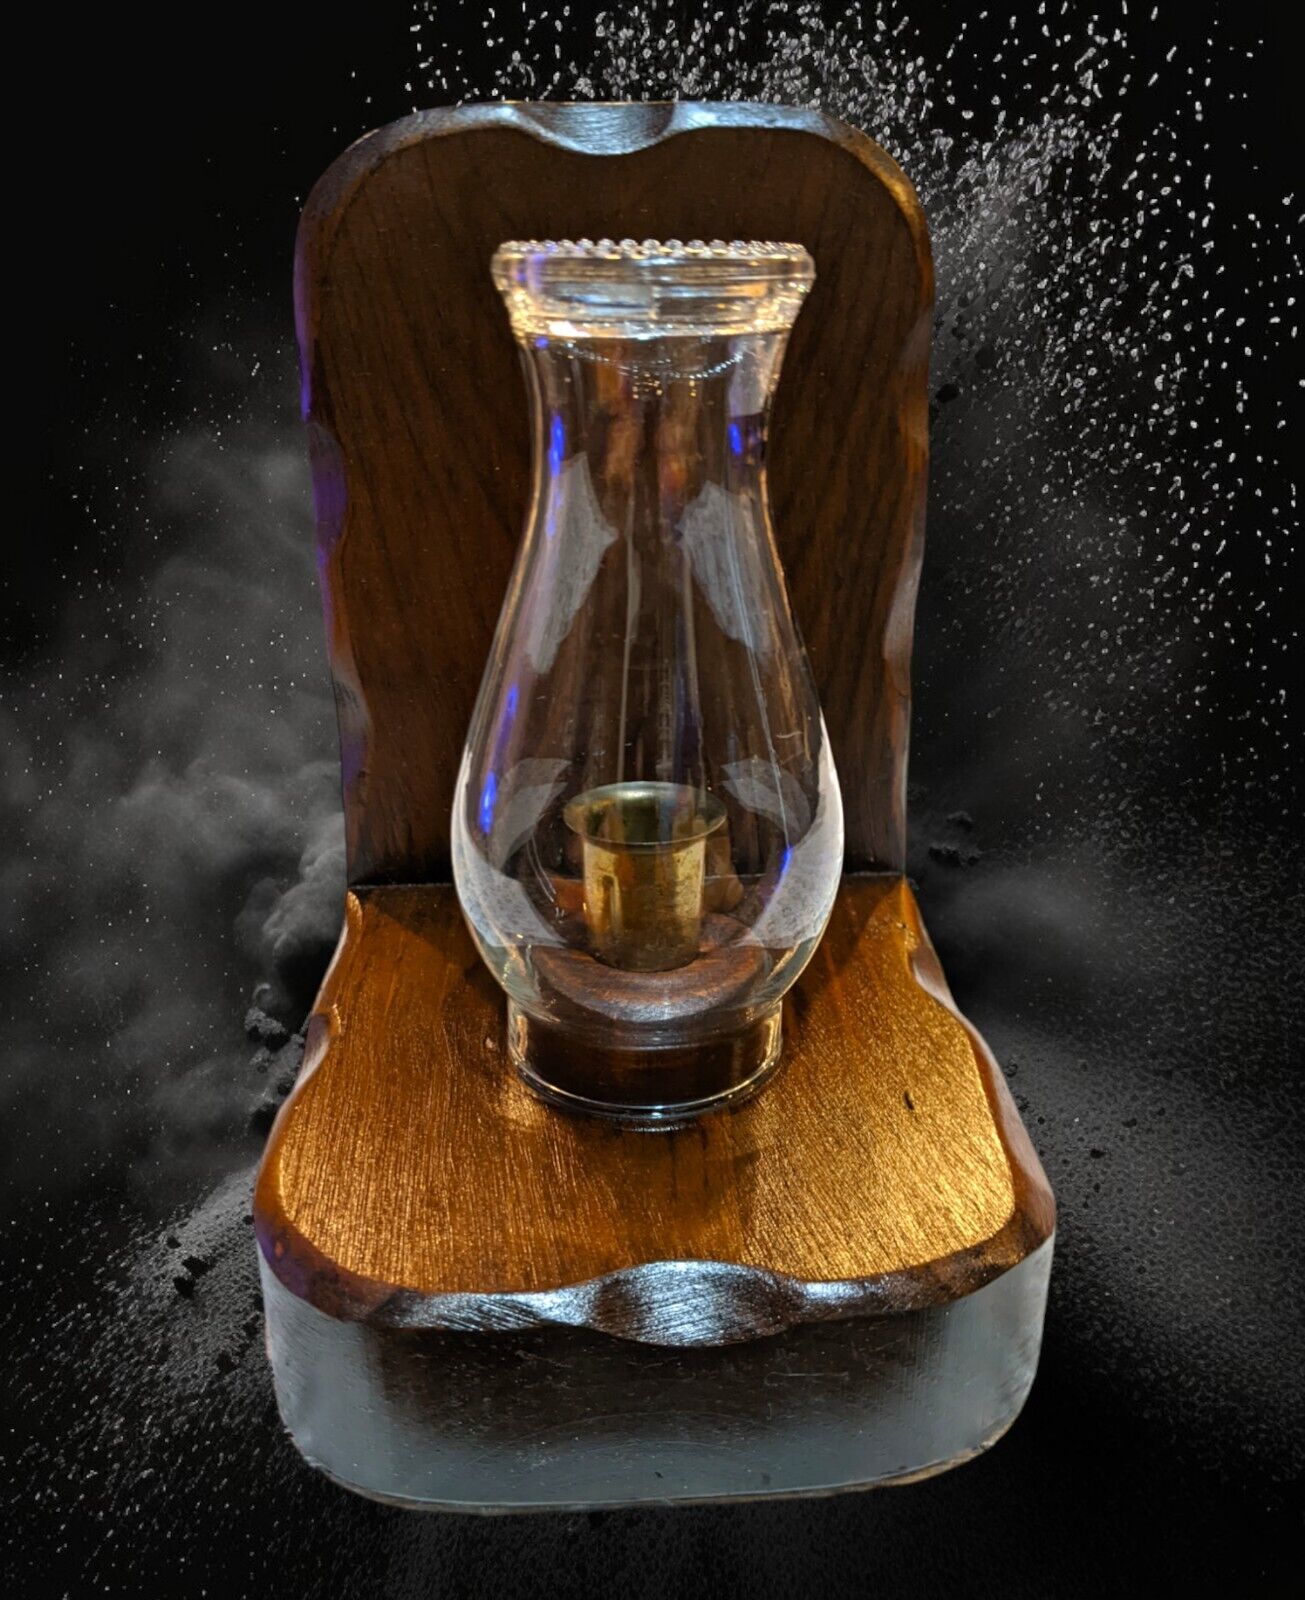 VTG Modernist Brutalist LG Wooden Bookend Glass Lantern Candlestick Brass Holder